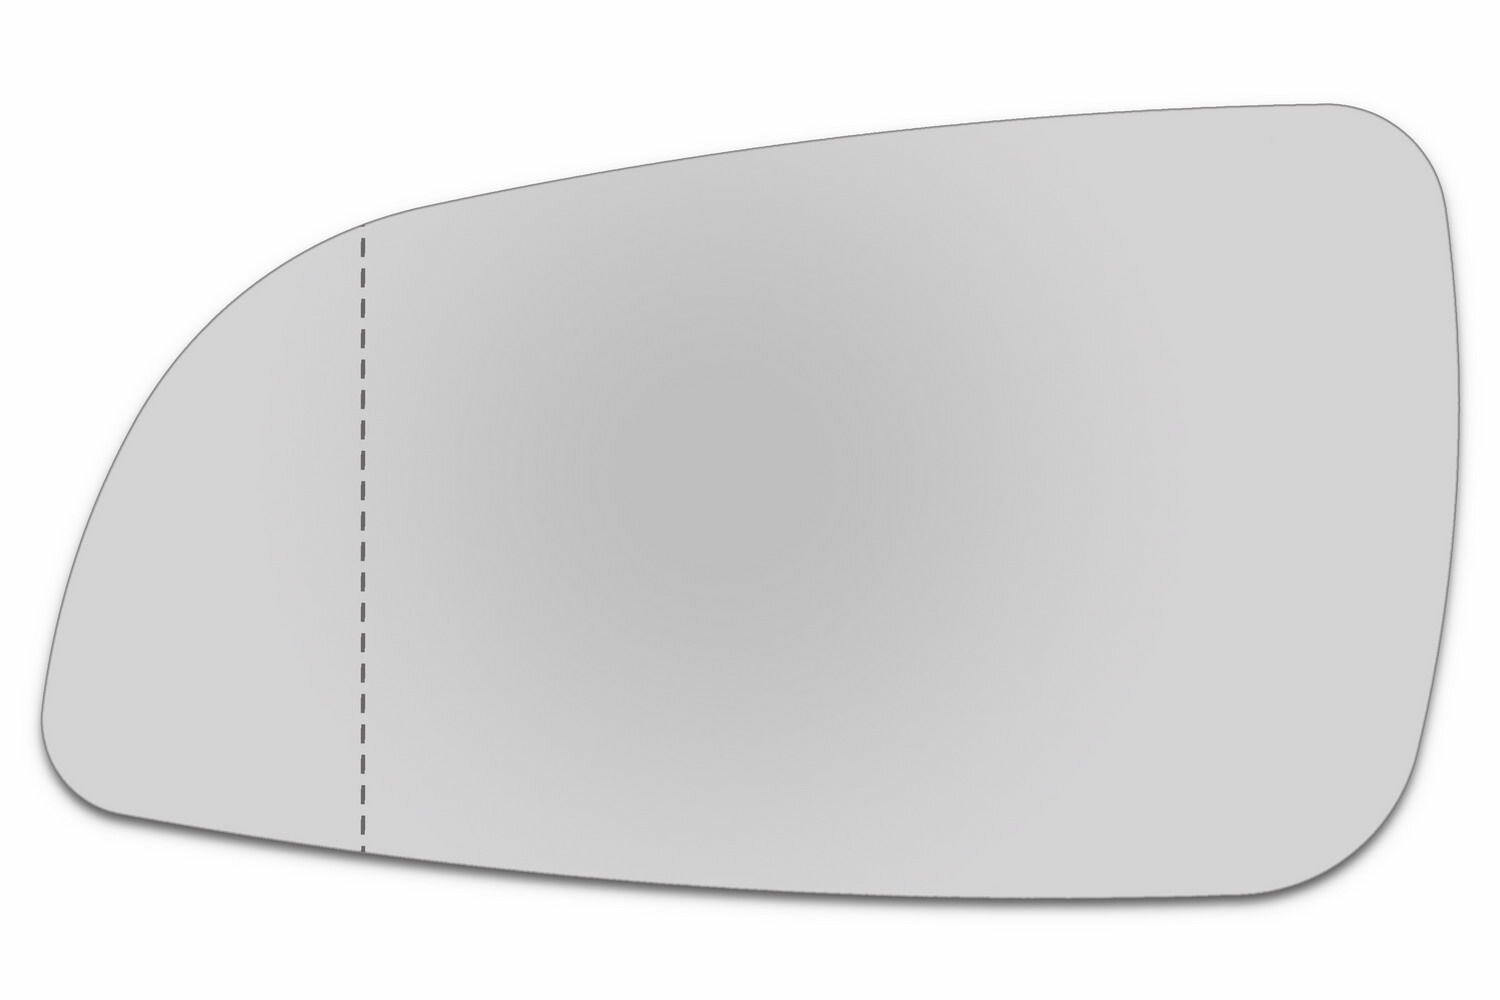 Зеркальный элемент левый OPEL Astra H (04-09) асферика нейтральный без обогрева. Размер зеркального элемента по центральной оси: высота - 96 мм, длина - 172 мм.